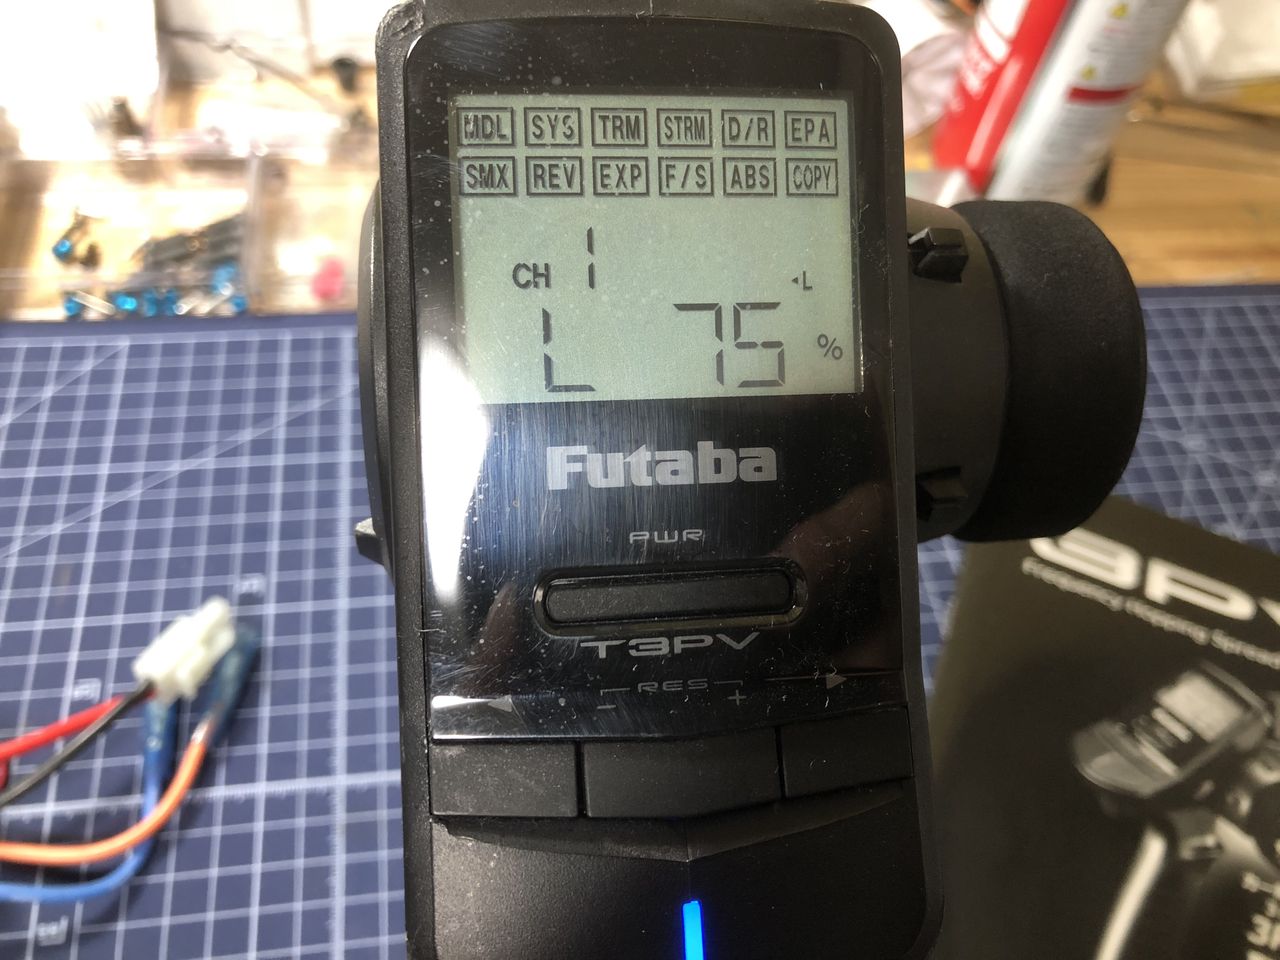 決算セール 3PV Futaba 2.4G レーシングパック フタバ PACK RACING ホビーラジコン